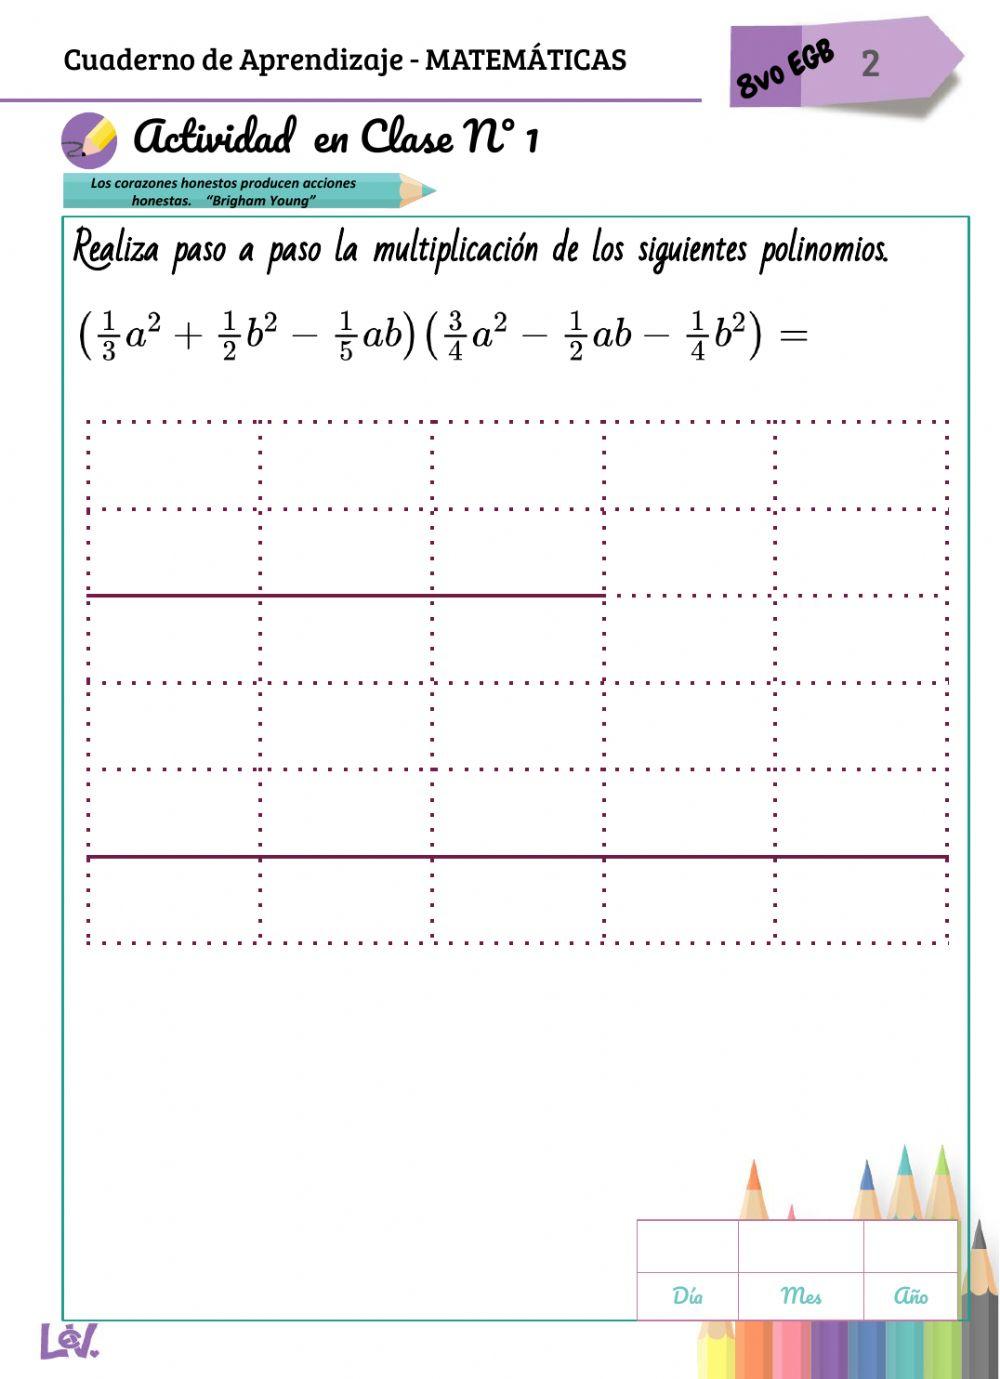 Multiplicar polinomios - lev